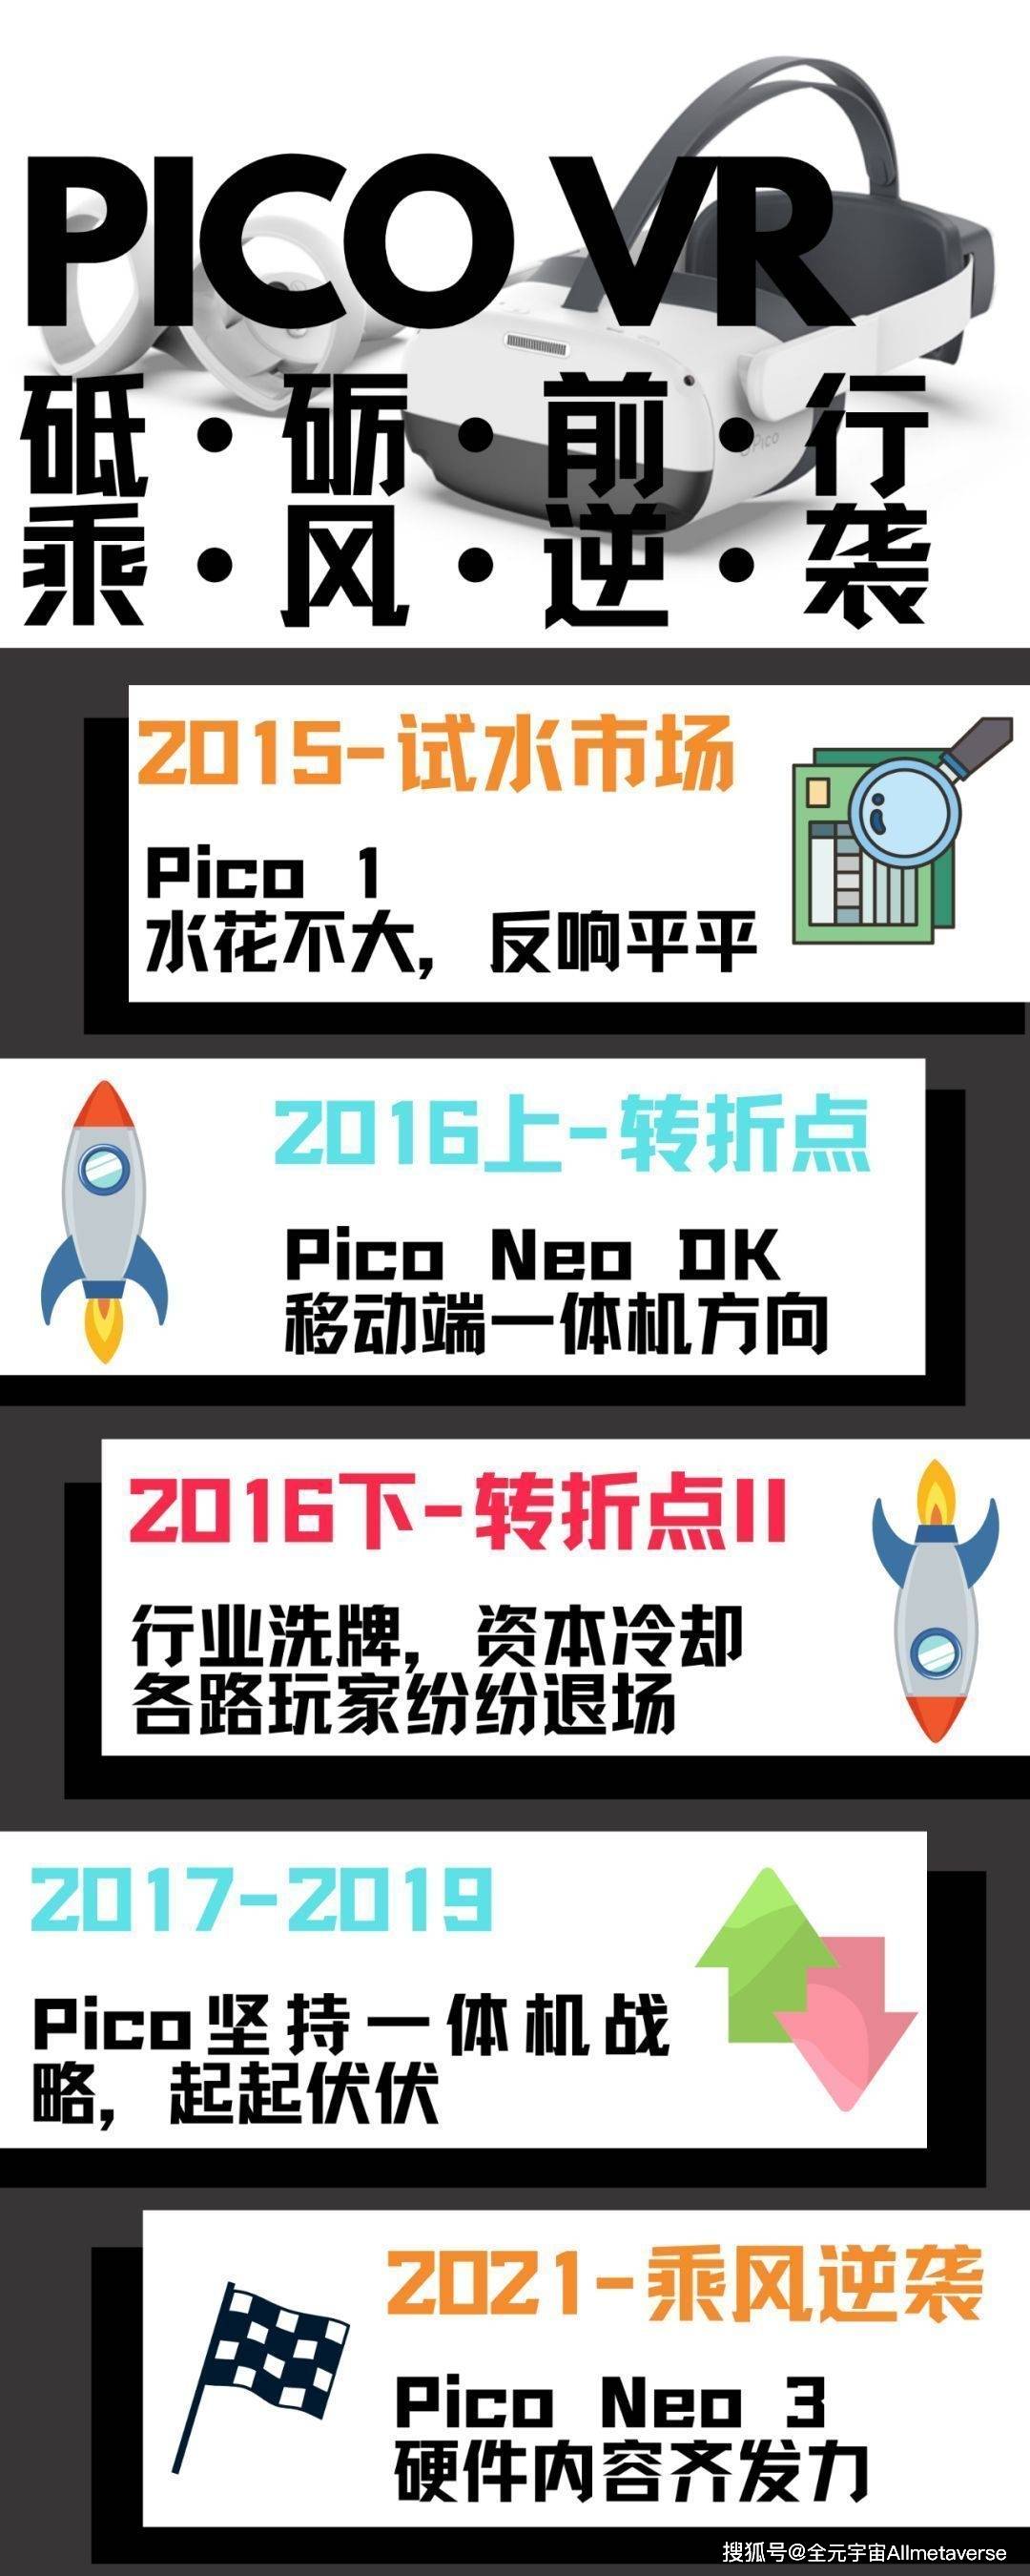 Pico VR 突围记